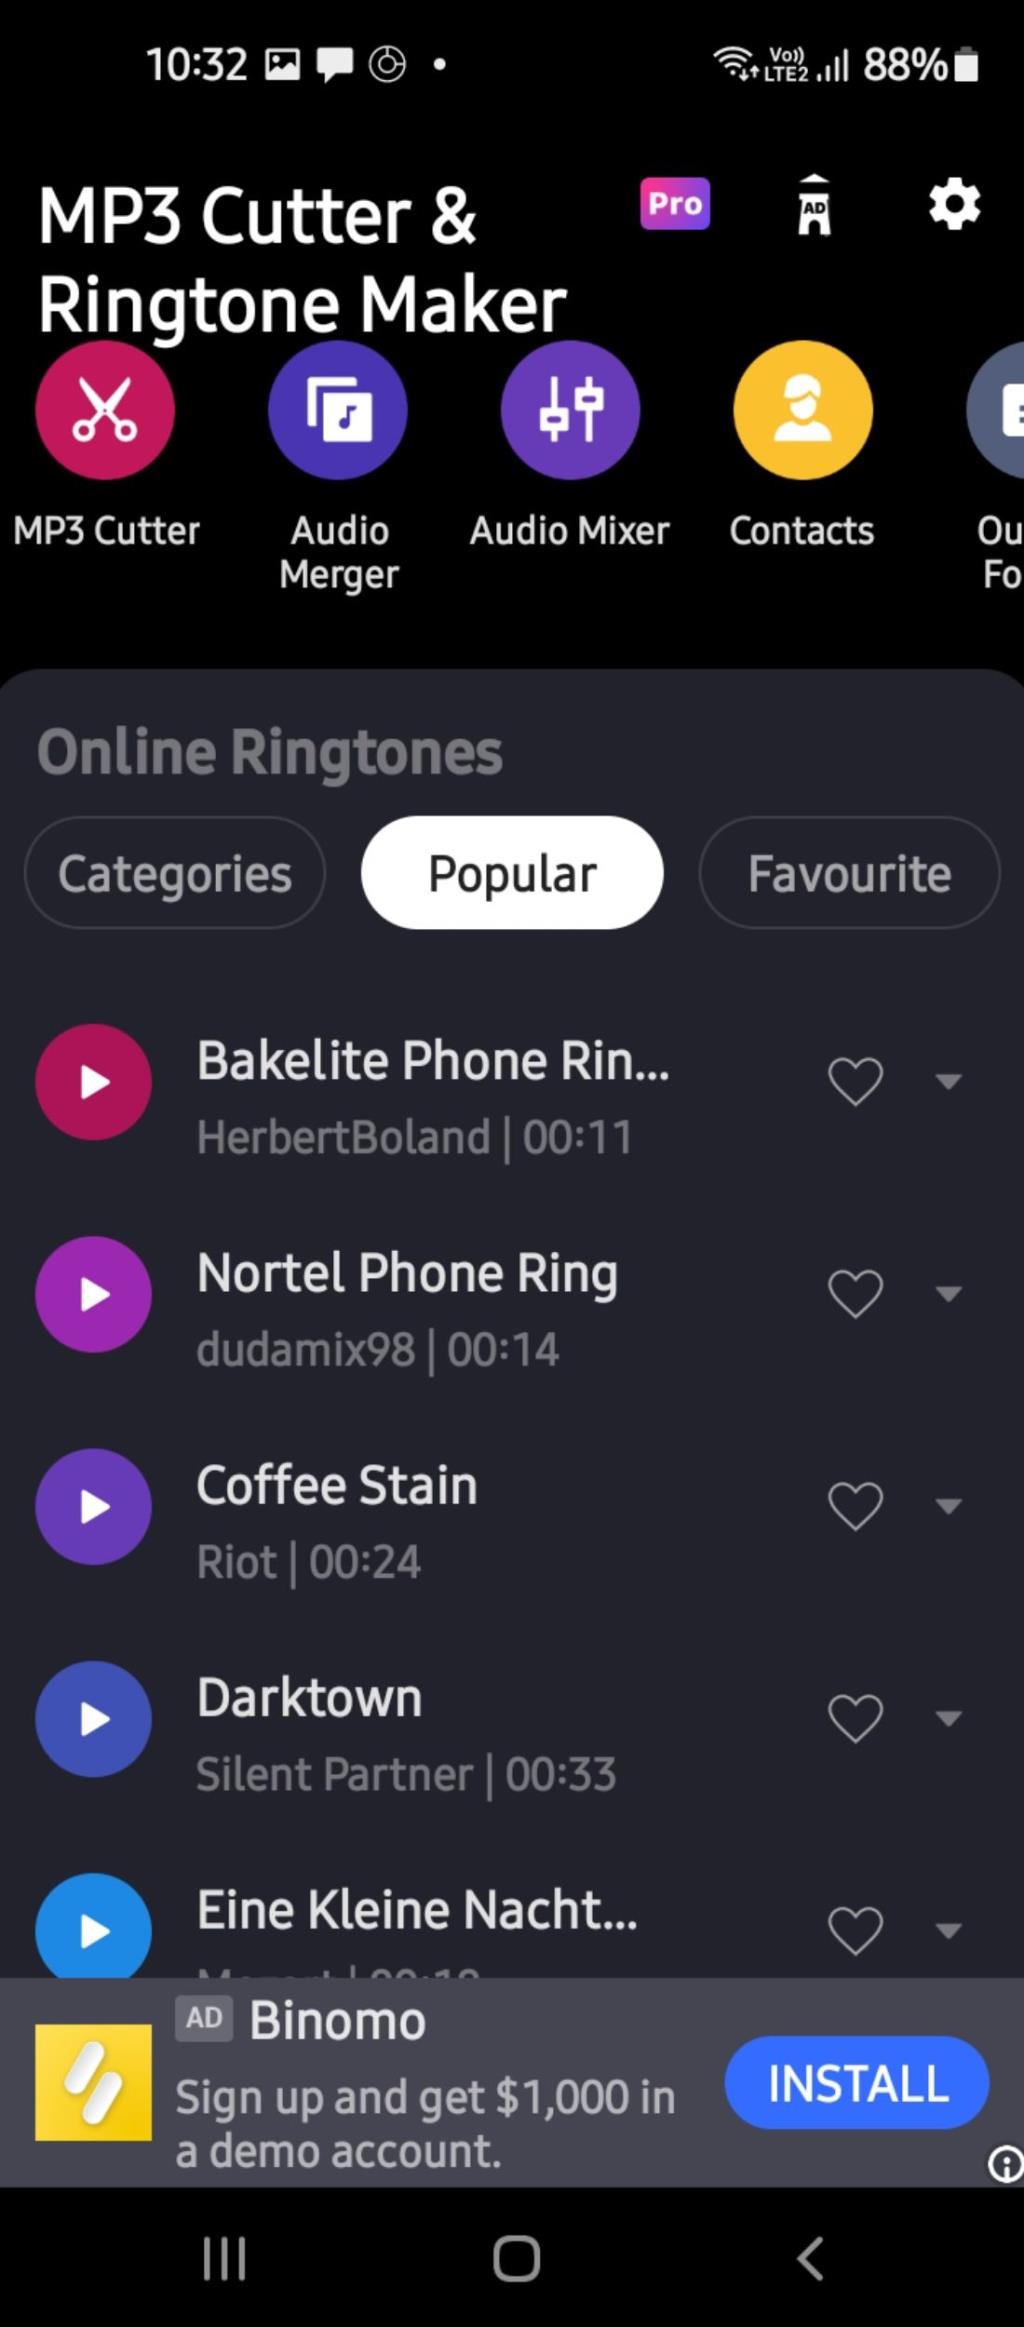 Android Telefonunuzdaki Her Uygulama İçin Bildirim Seslerini Nasıl Değiştirirsiniz?